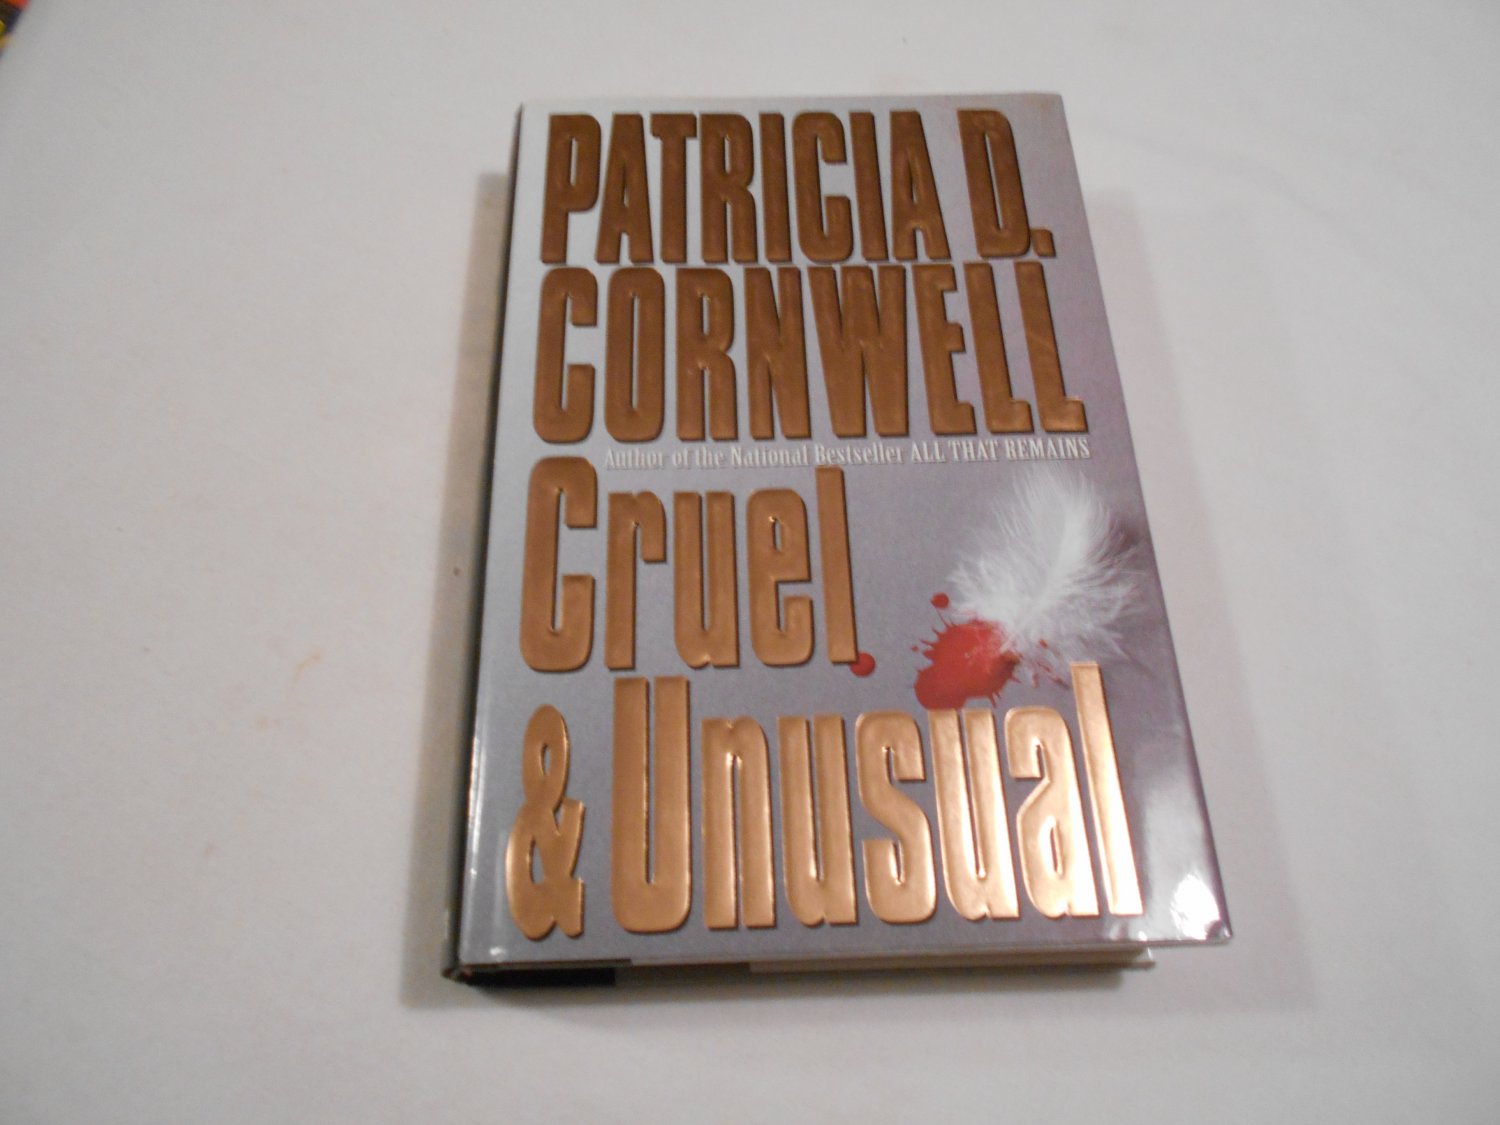 Cruel & Unusual by Patricia Cornwell (1993) (B1) Kay Scarpetta #4, Crime Fiction